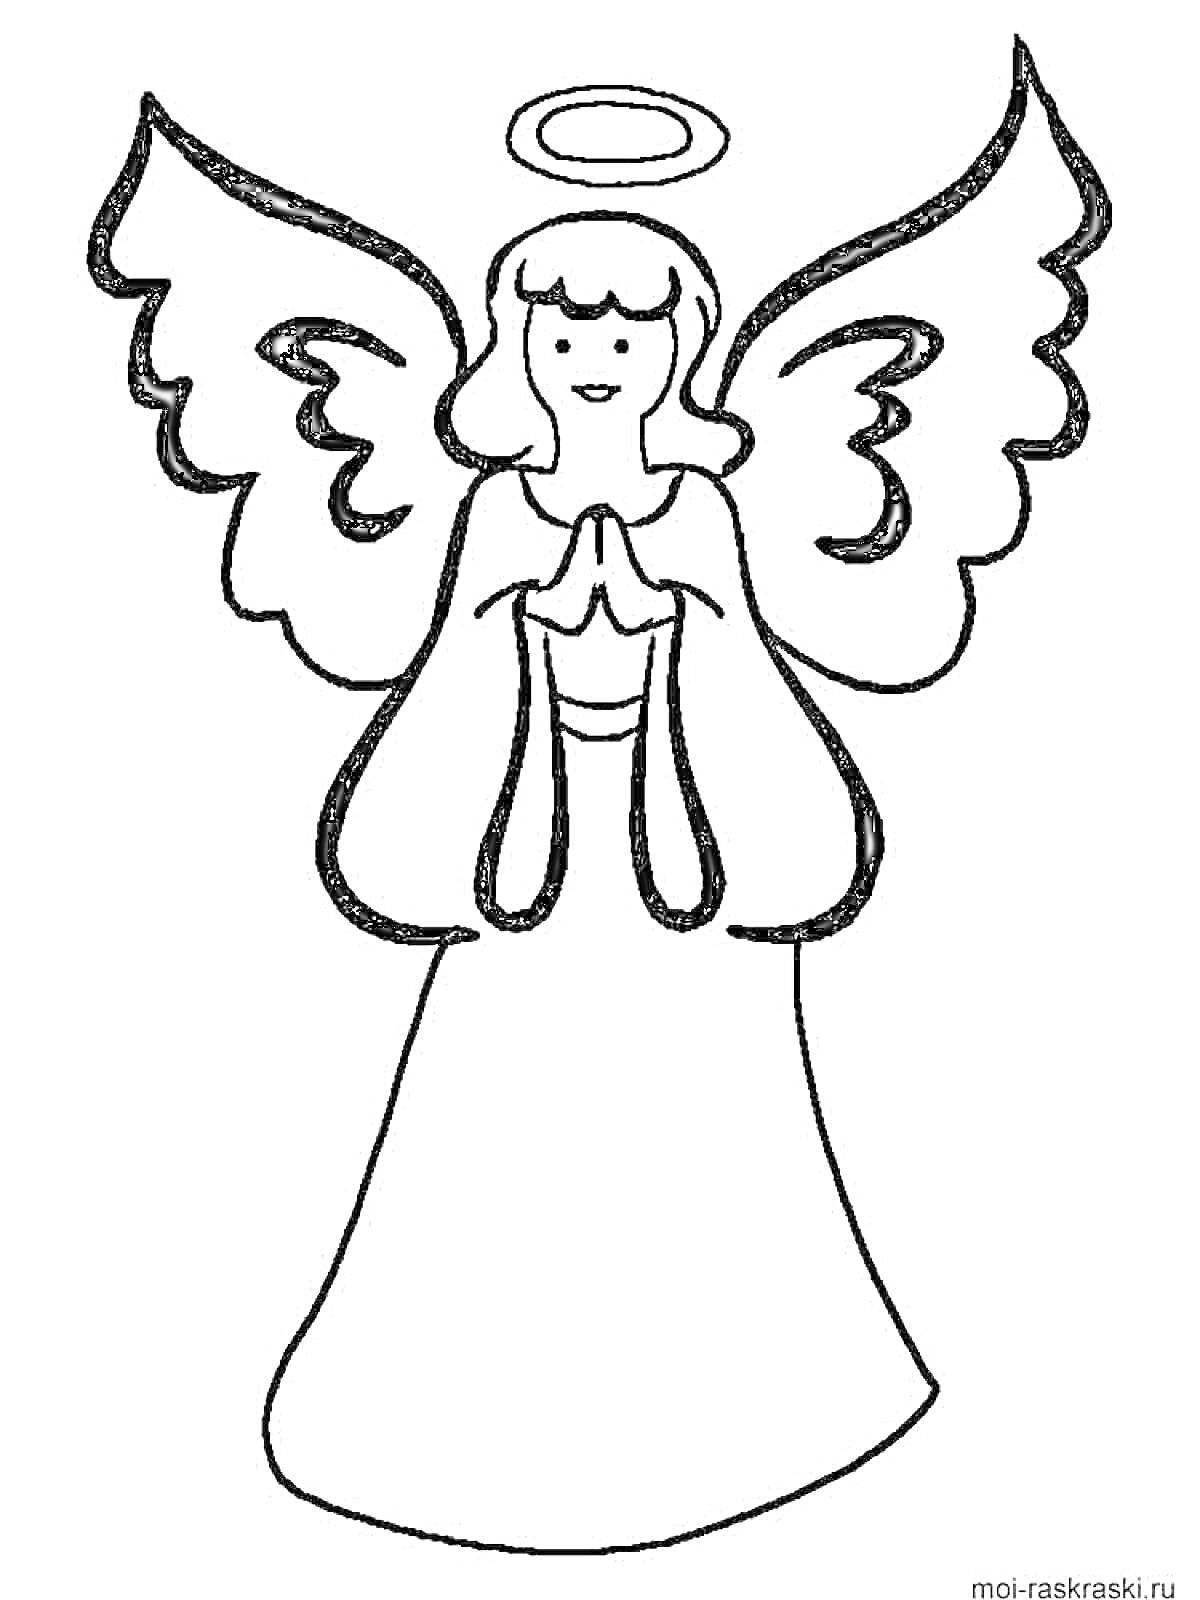 Ангел с крыльями и нимбом, сложивший руки в молитве